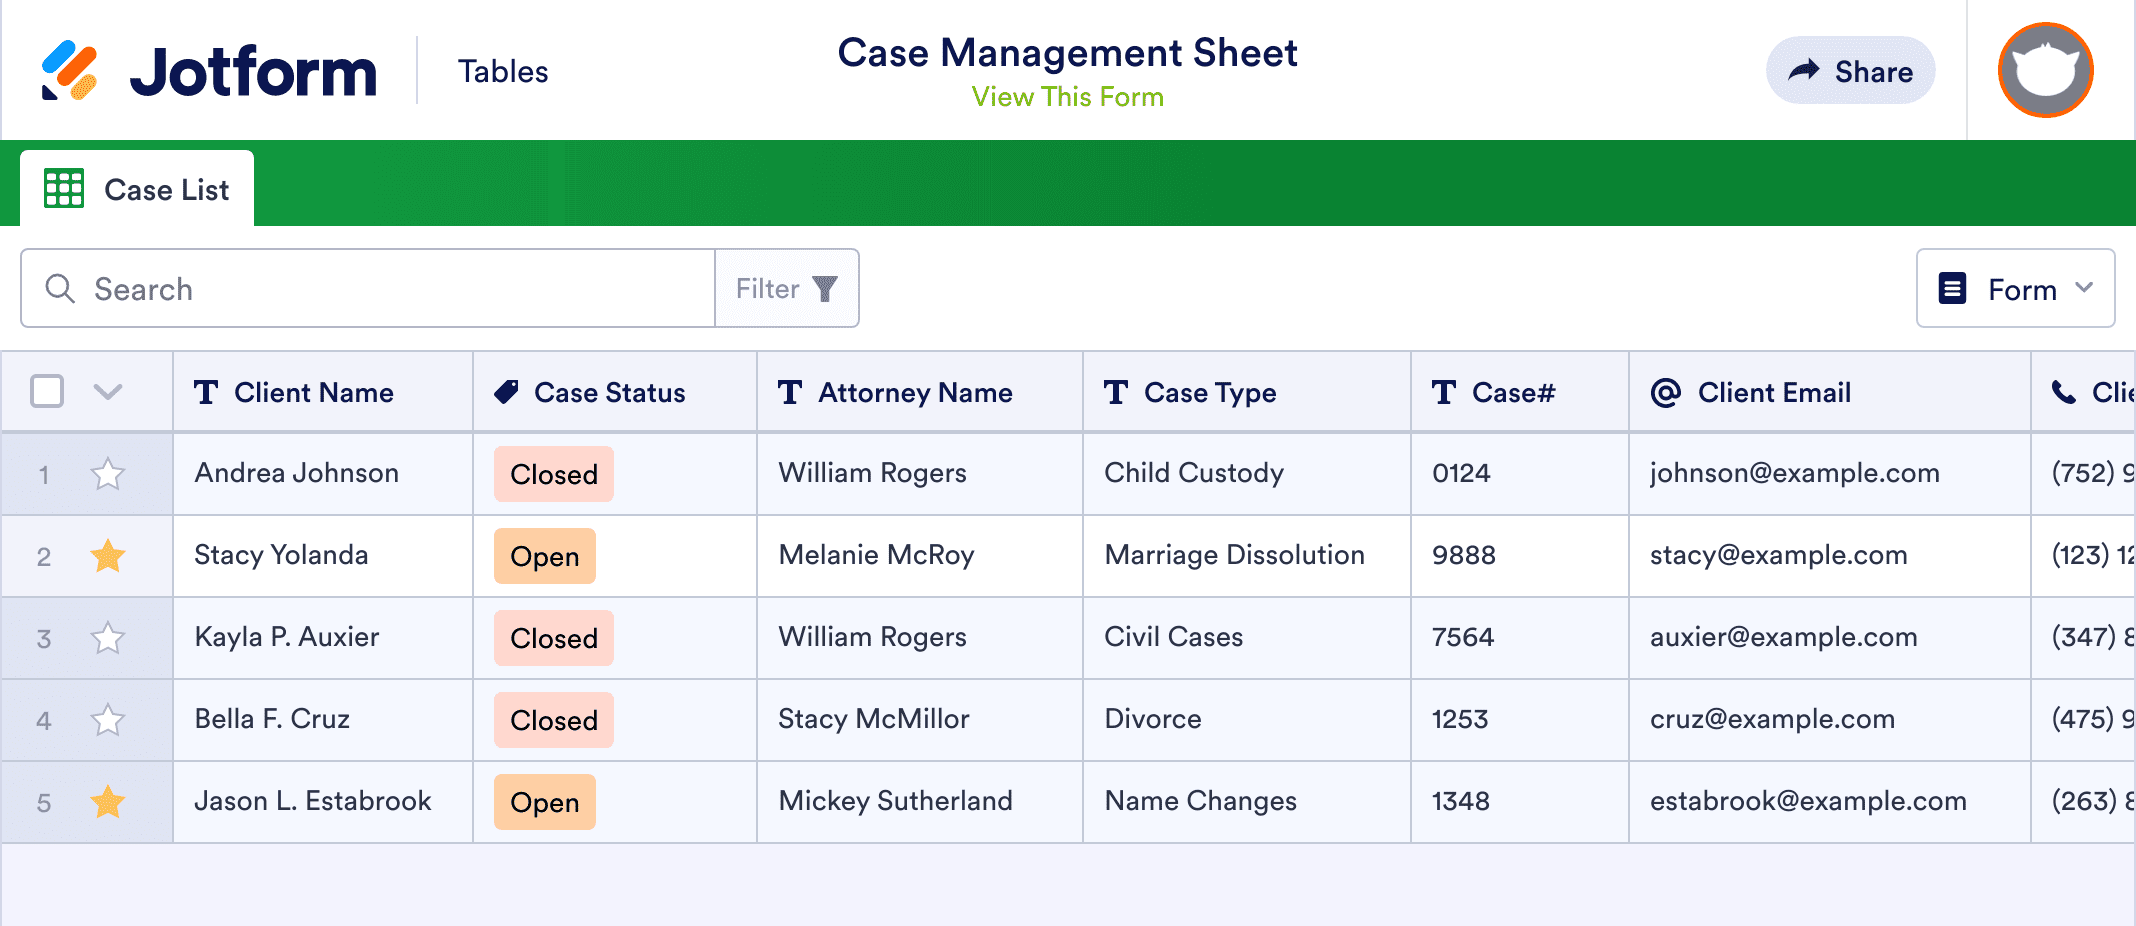 Case Management Sheet Template Jotform Tables